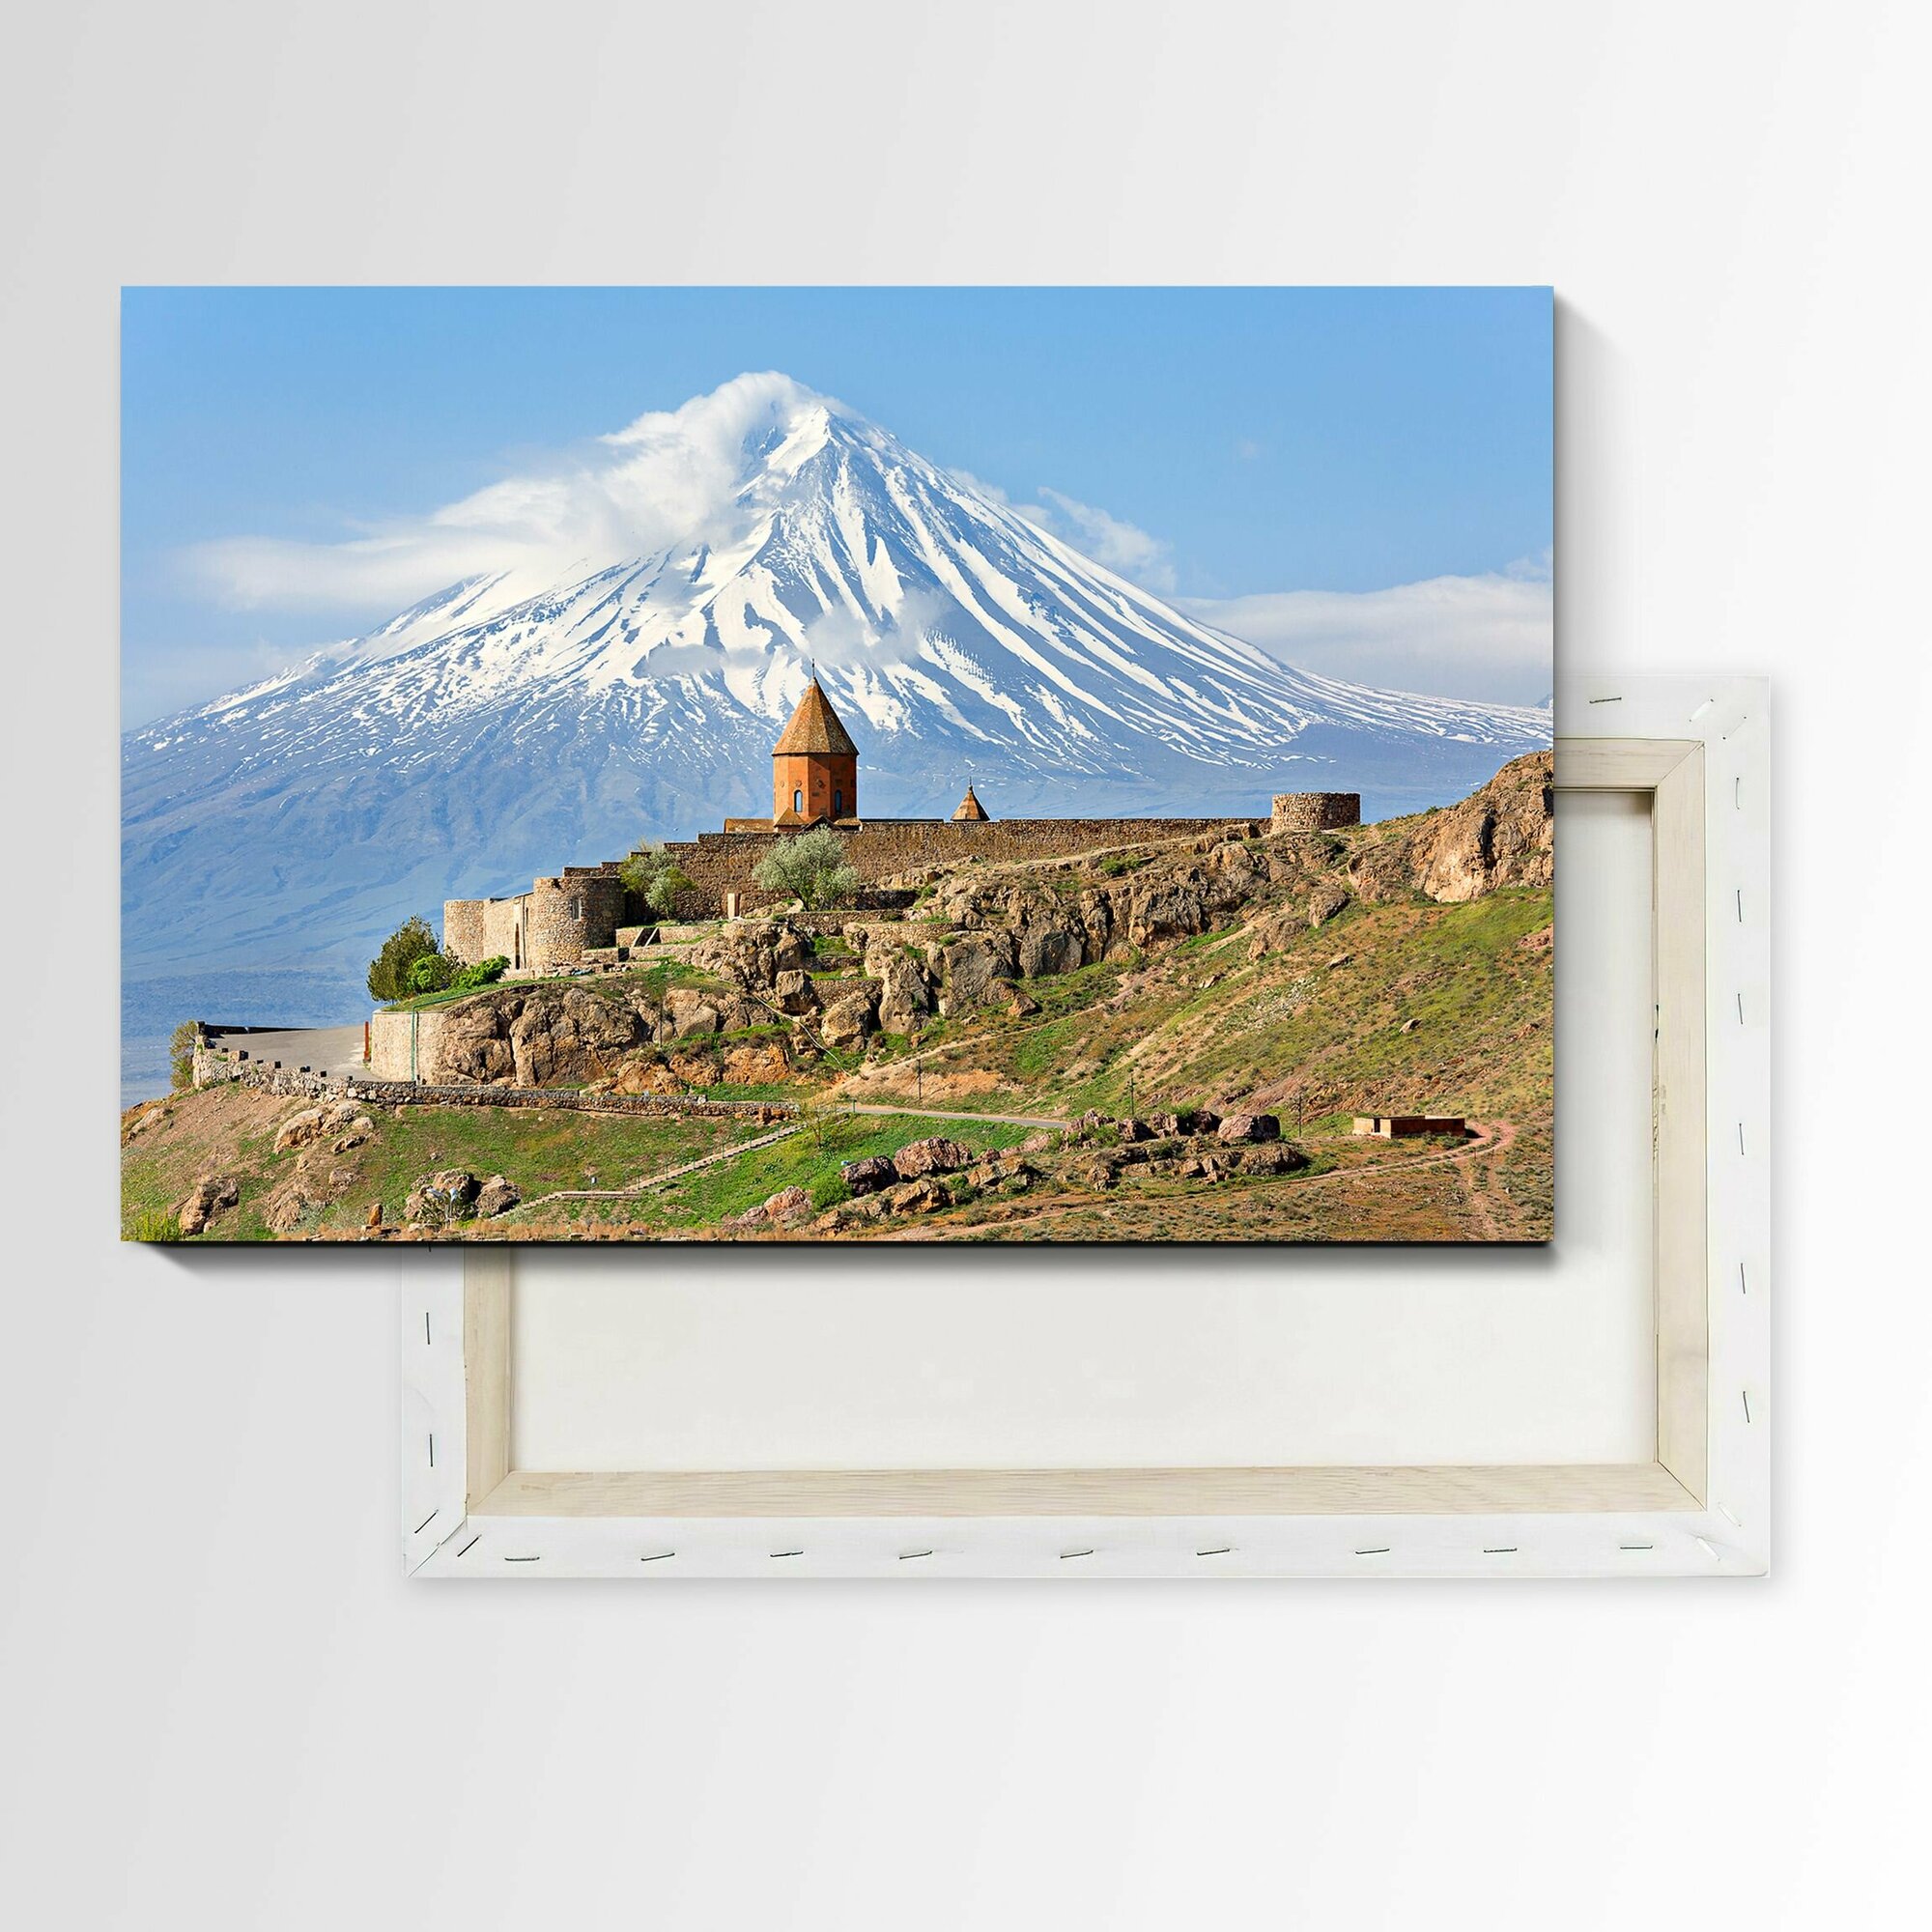 Картина на холсте - "Арарат Армения" размер 60-40 см